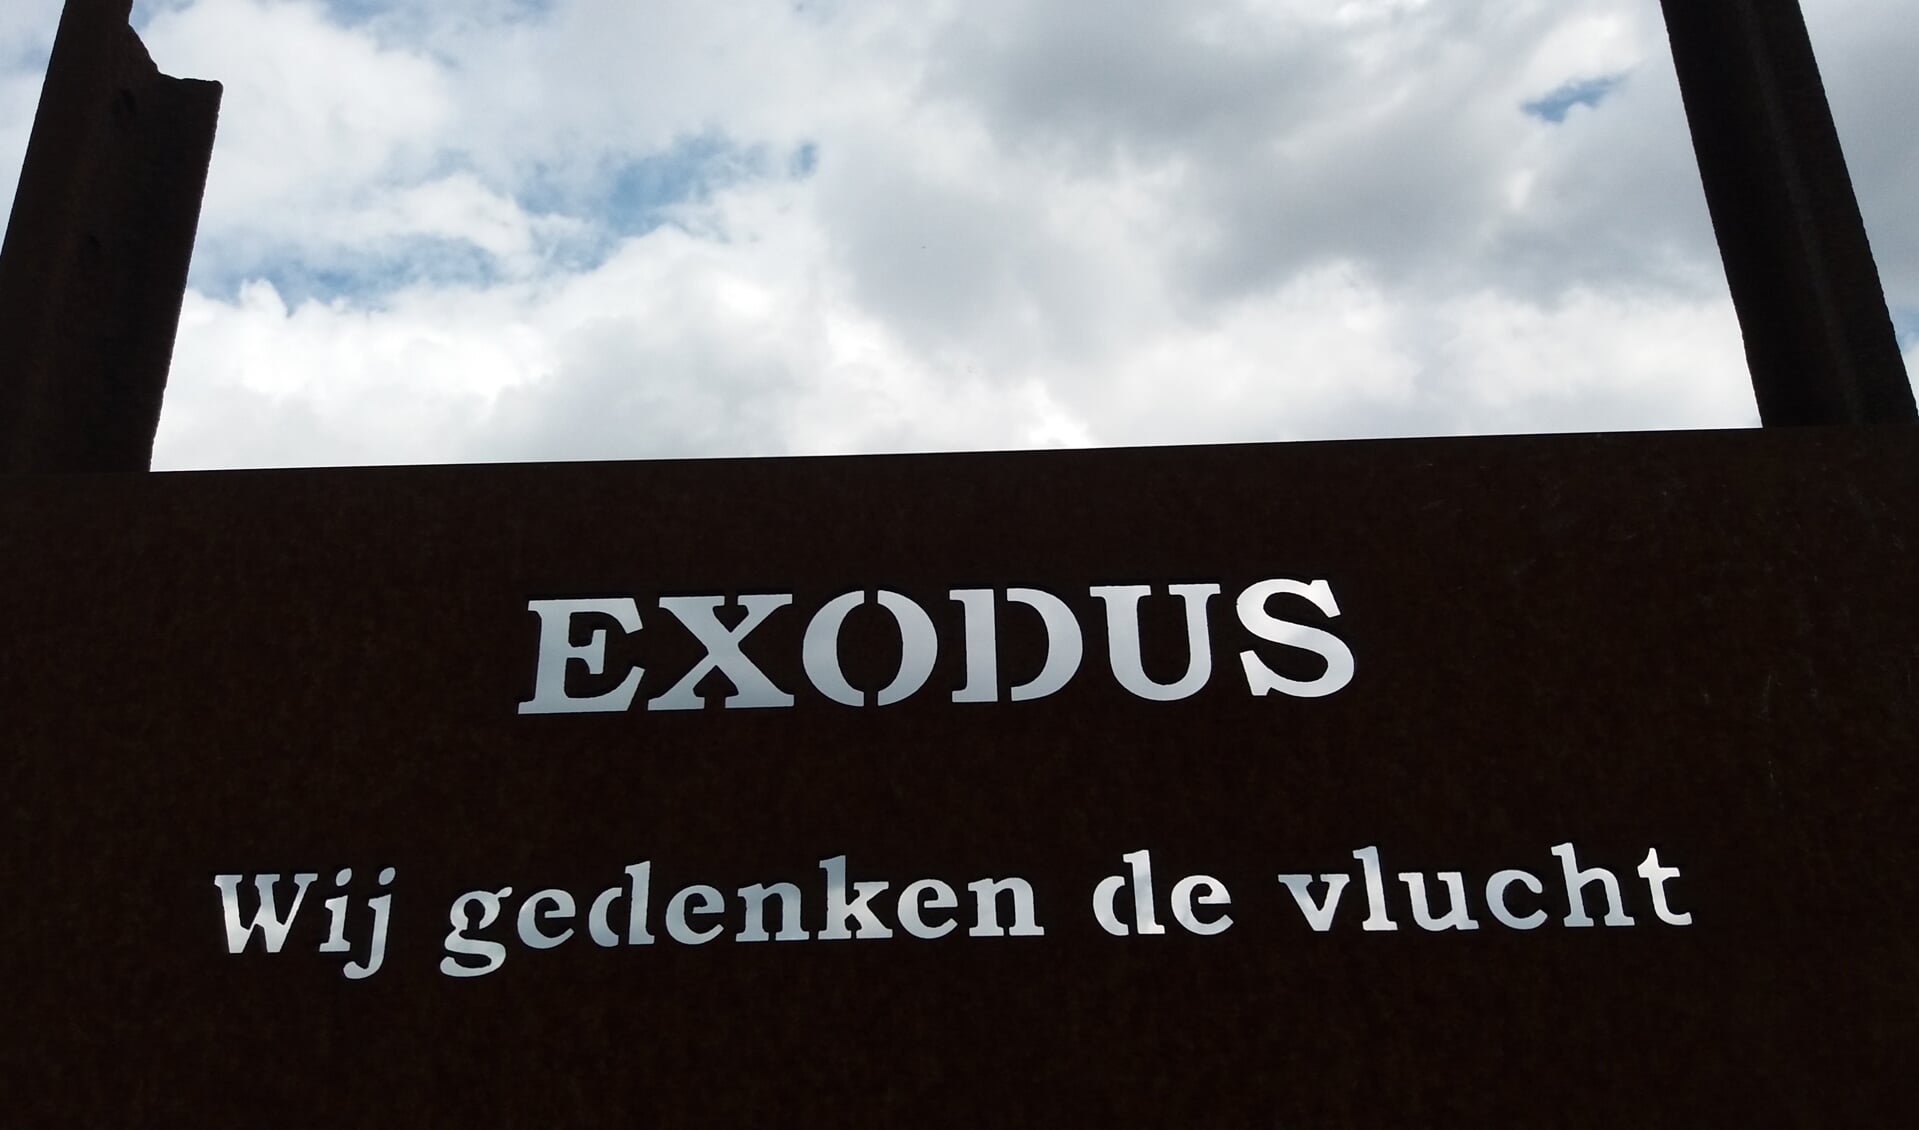 Monument van de Exodus in 1944 in Arnhem-Zuid. (foto: Guus Versmissen)